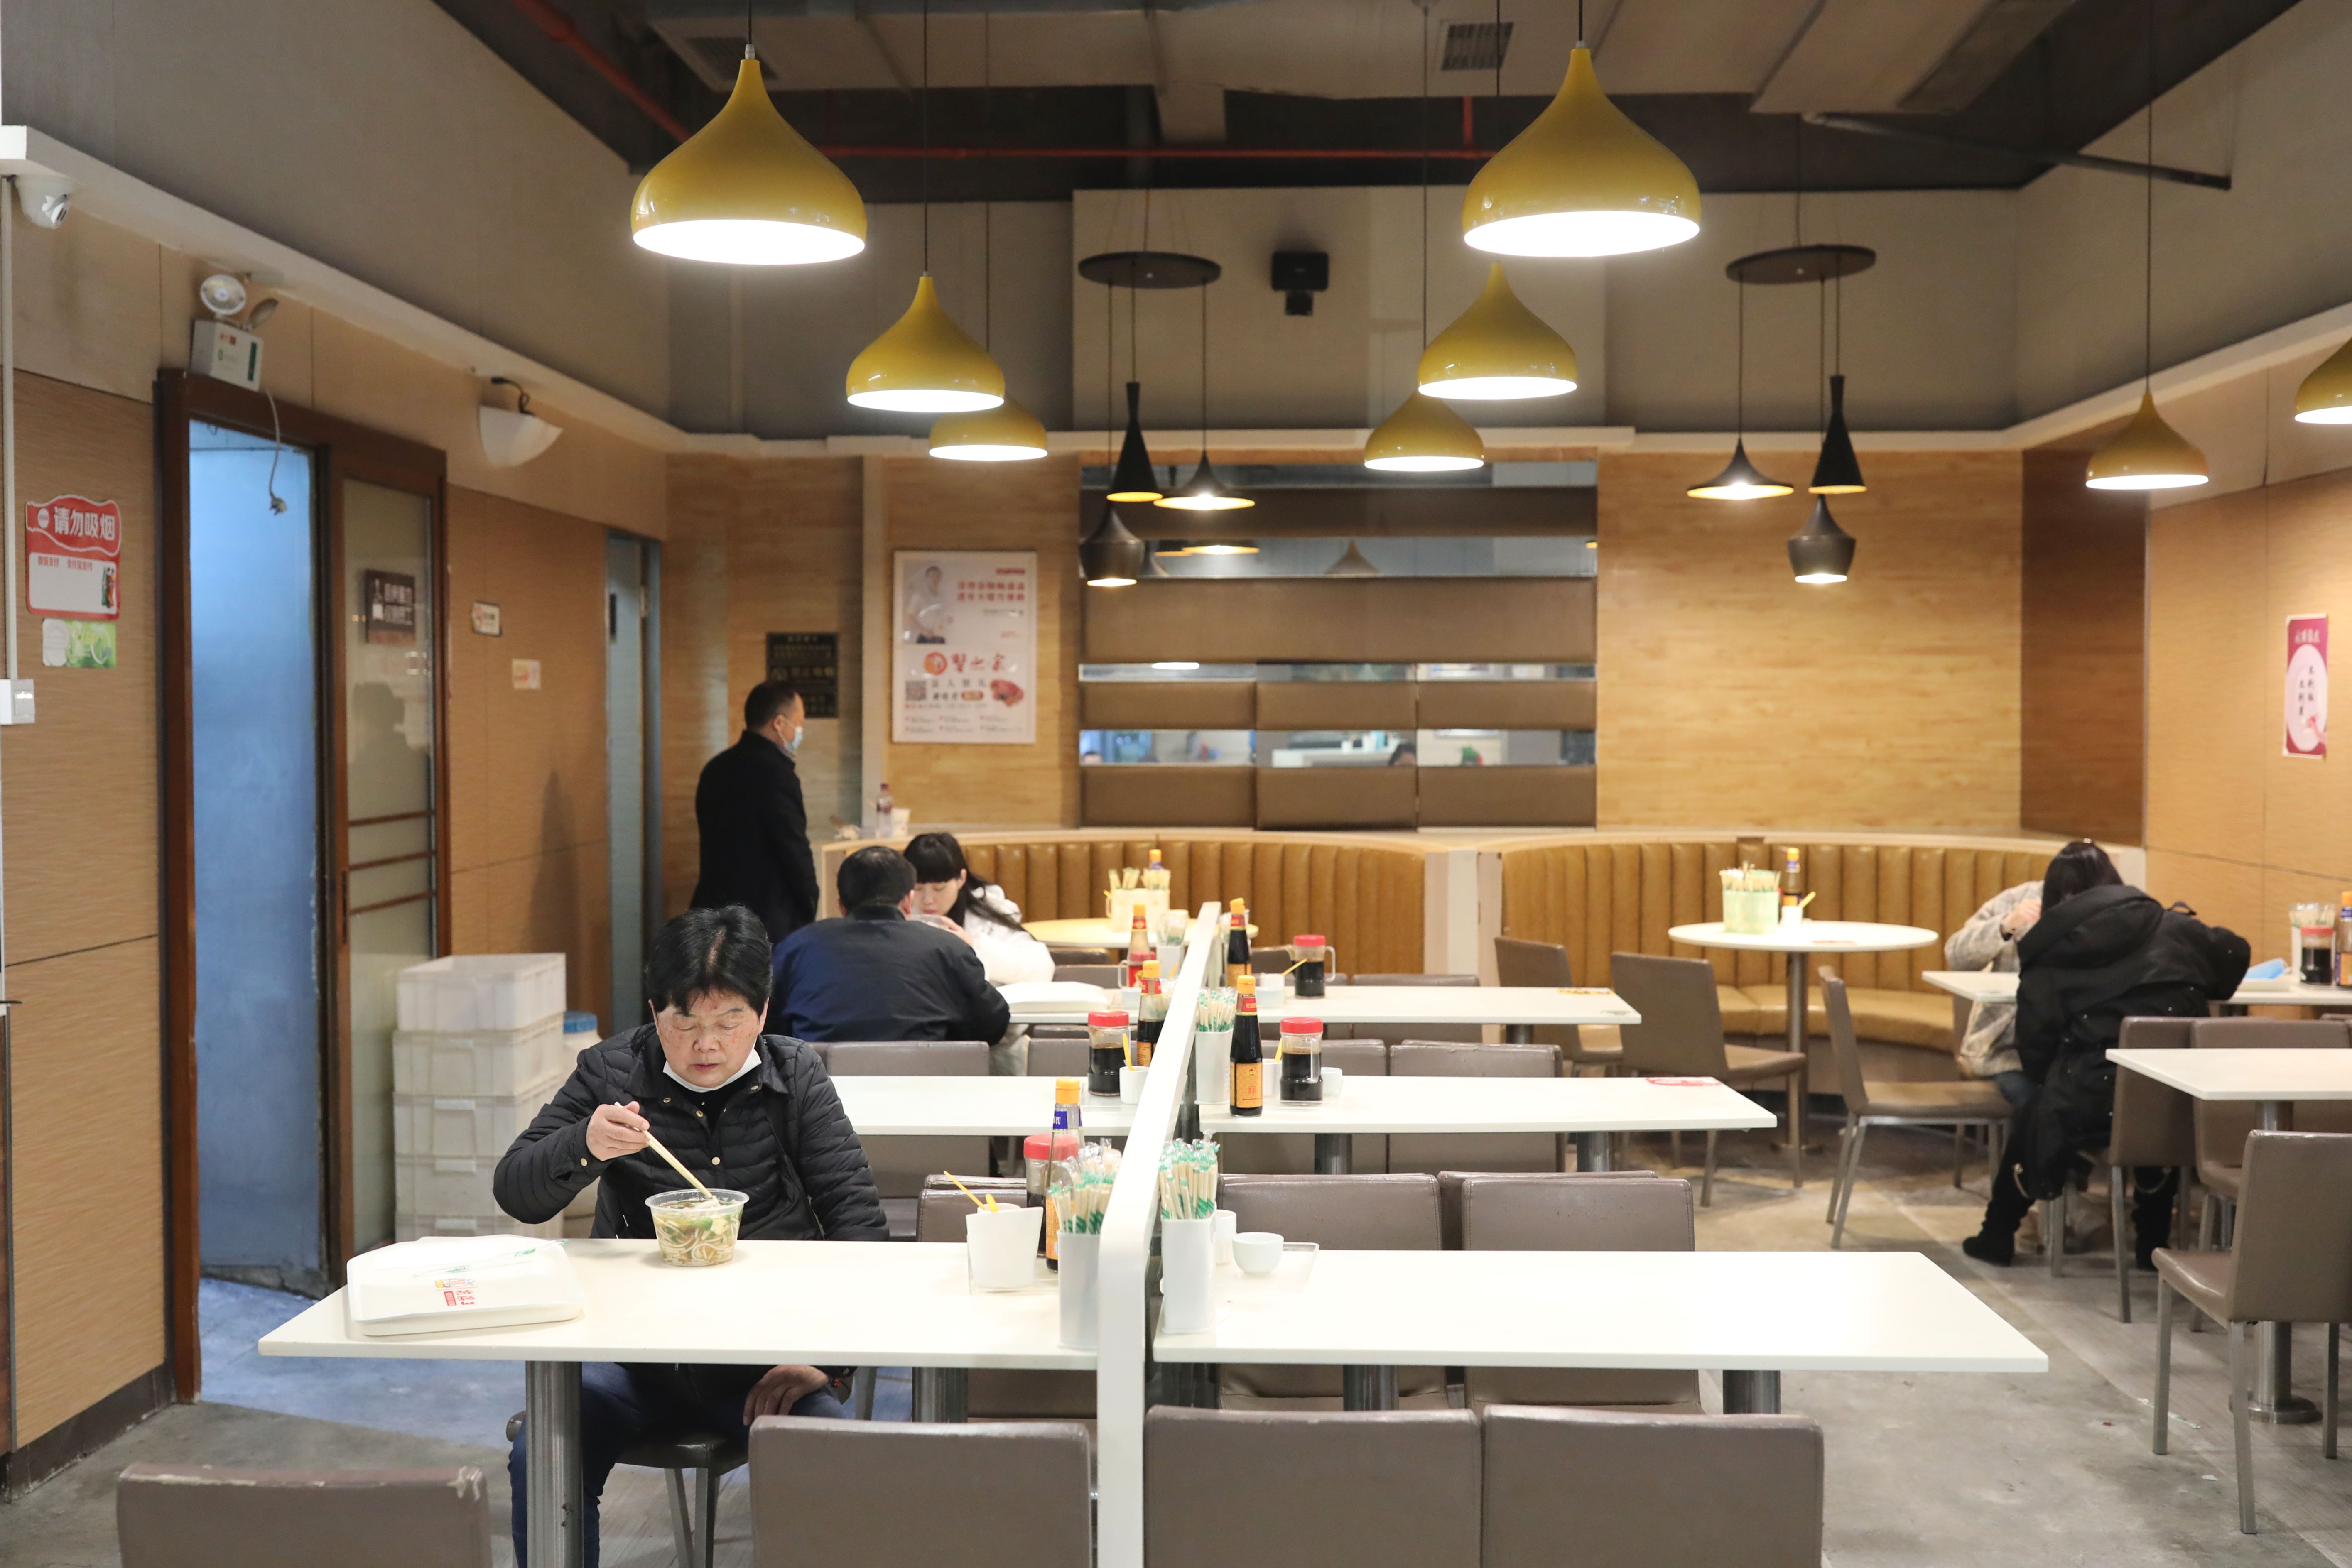 新华社记者 欧东衢 摄↑3月18日,贵阳一家餐饮店的工作人员在准备餐